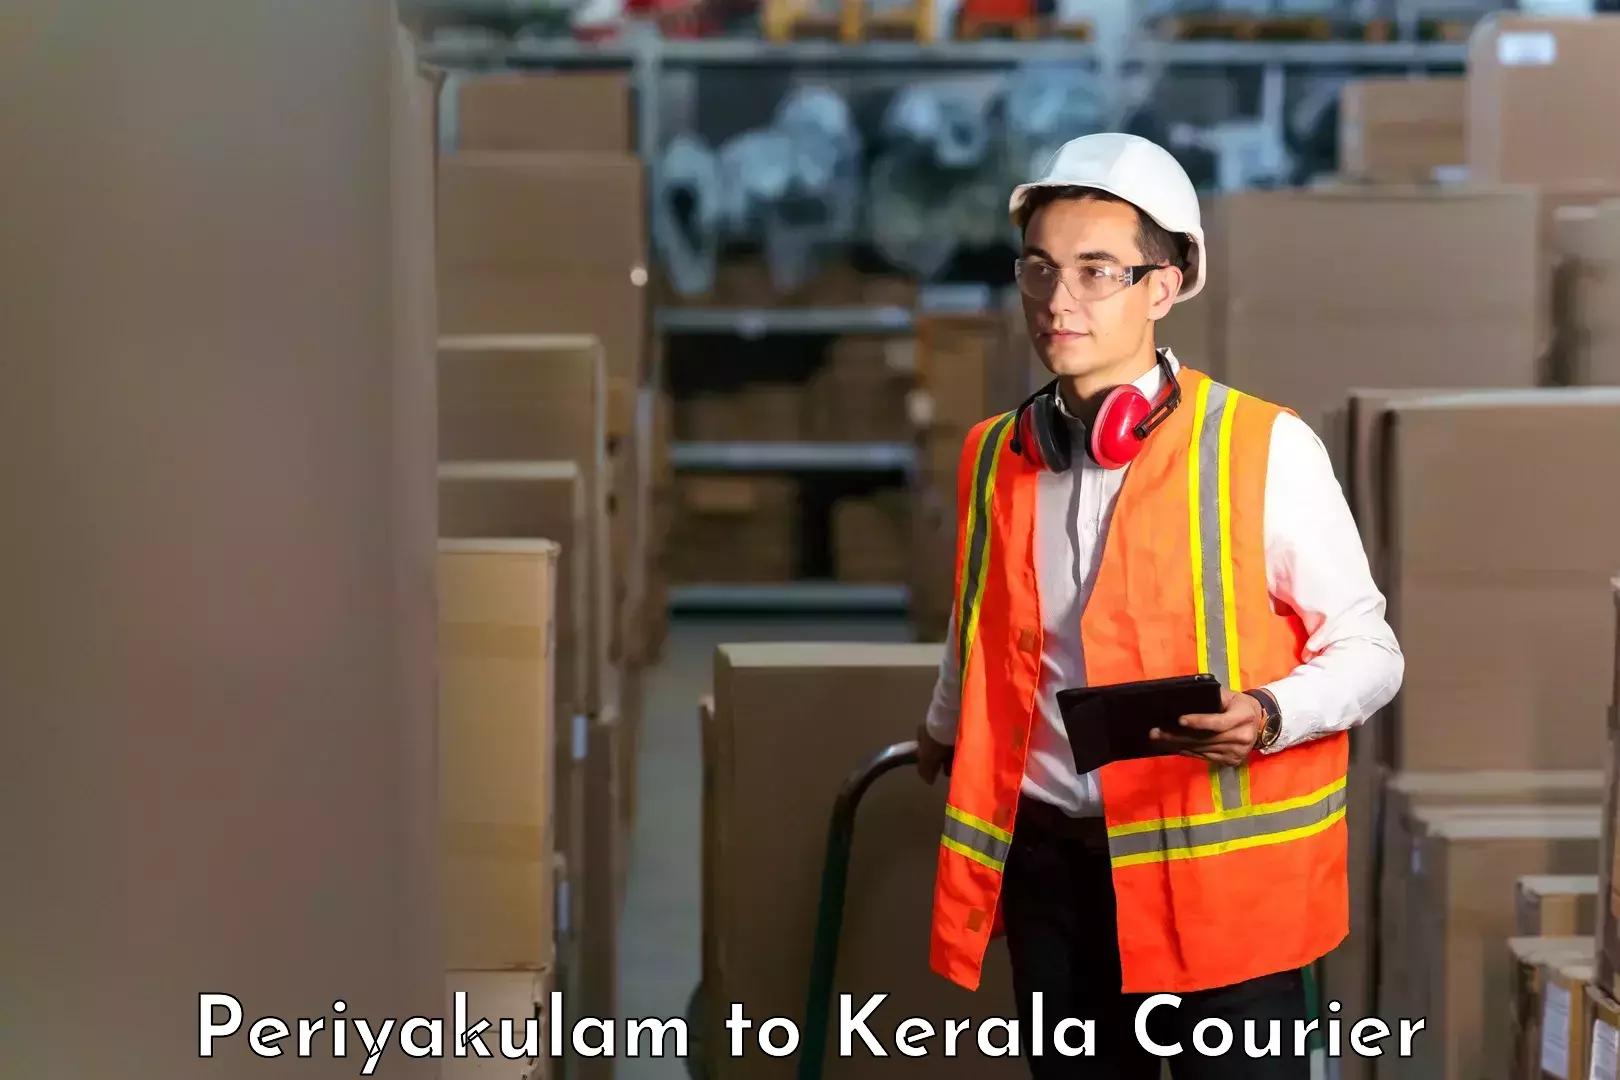 Versatile courier offerings Periyakulam to Perumbavoor